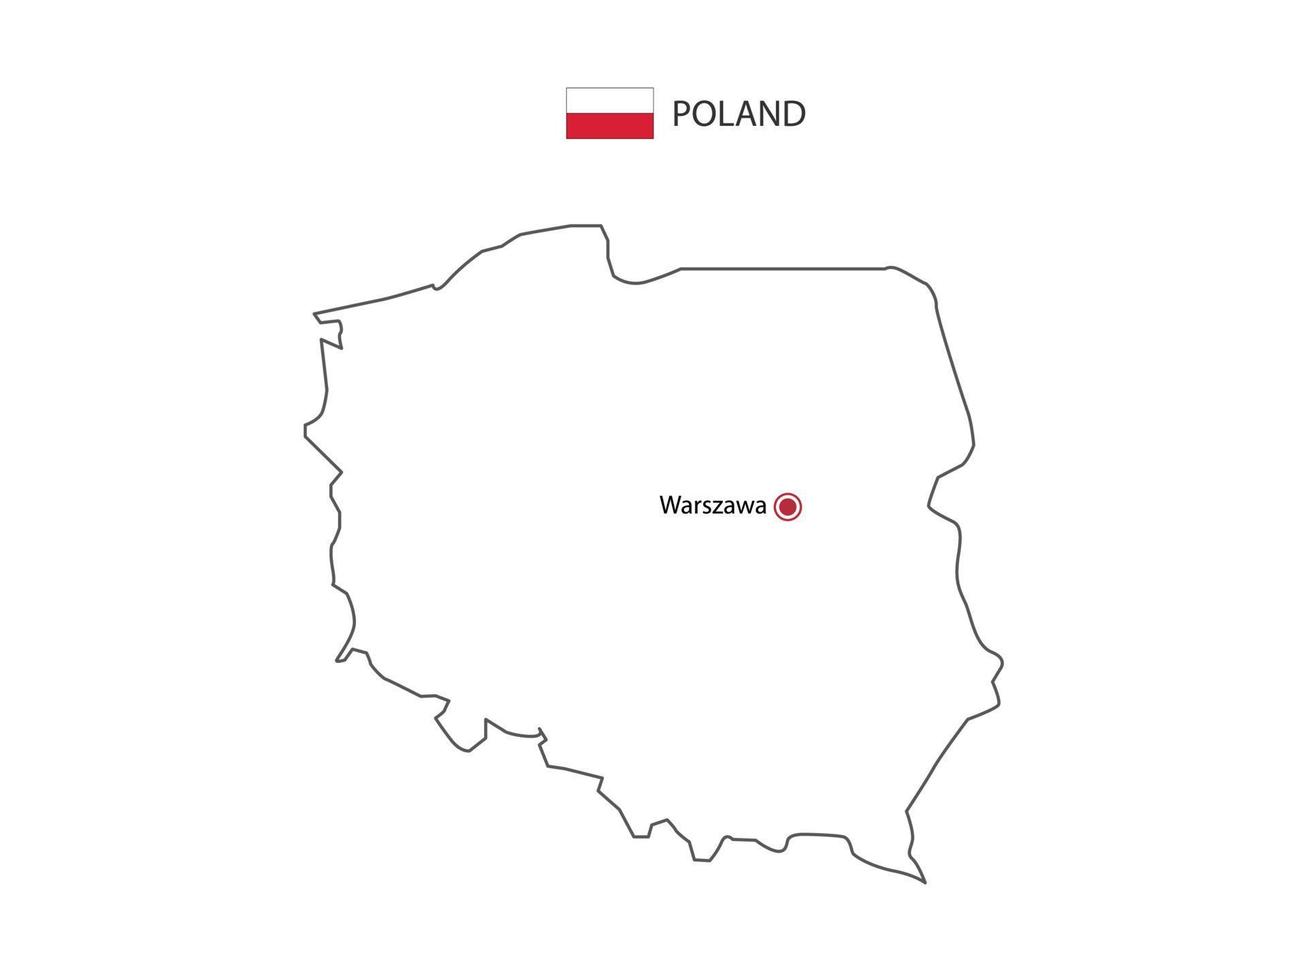 mão desenhar vetor de linha preta fina do mapa da polônia com capital warszawa em fundo branco.